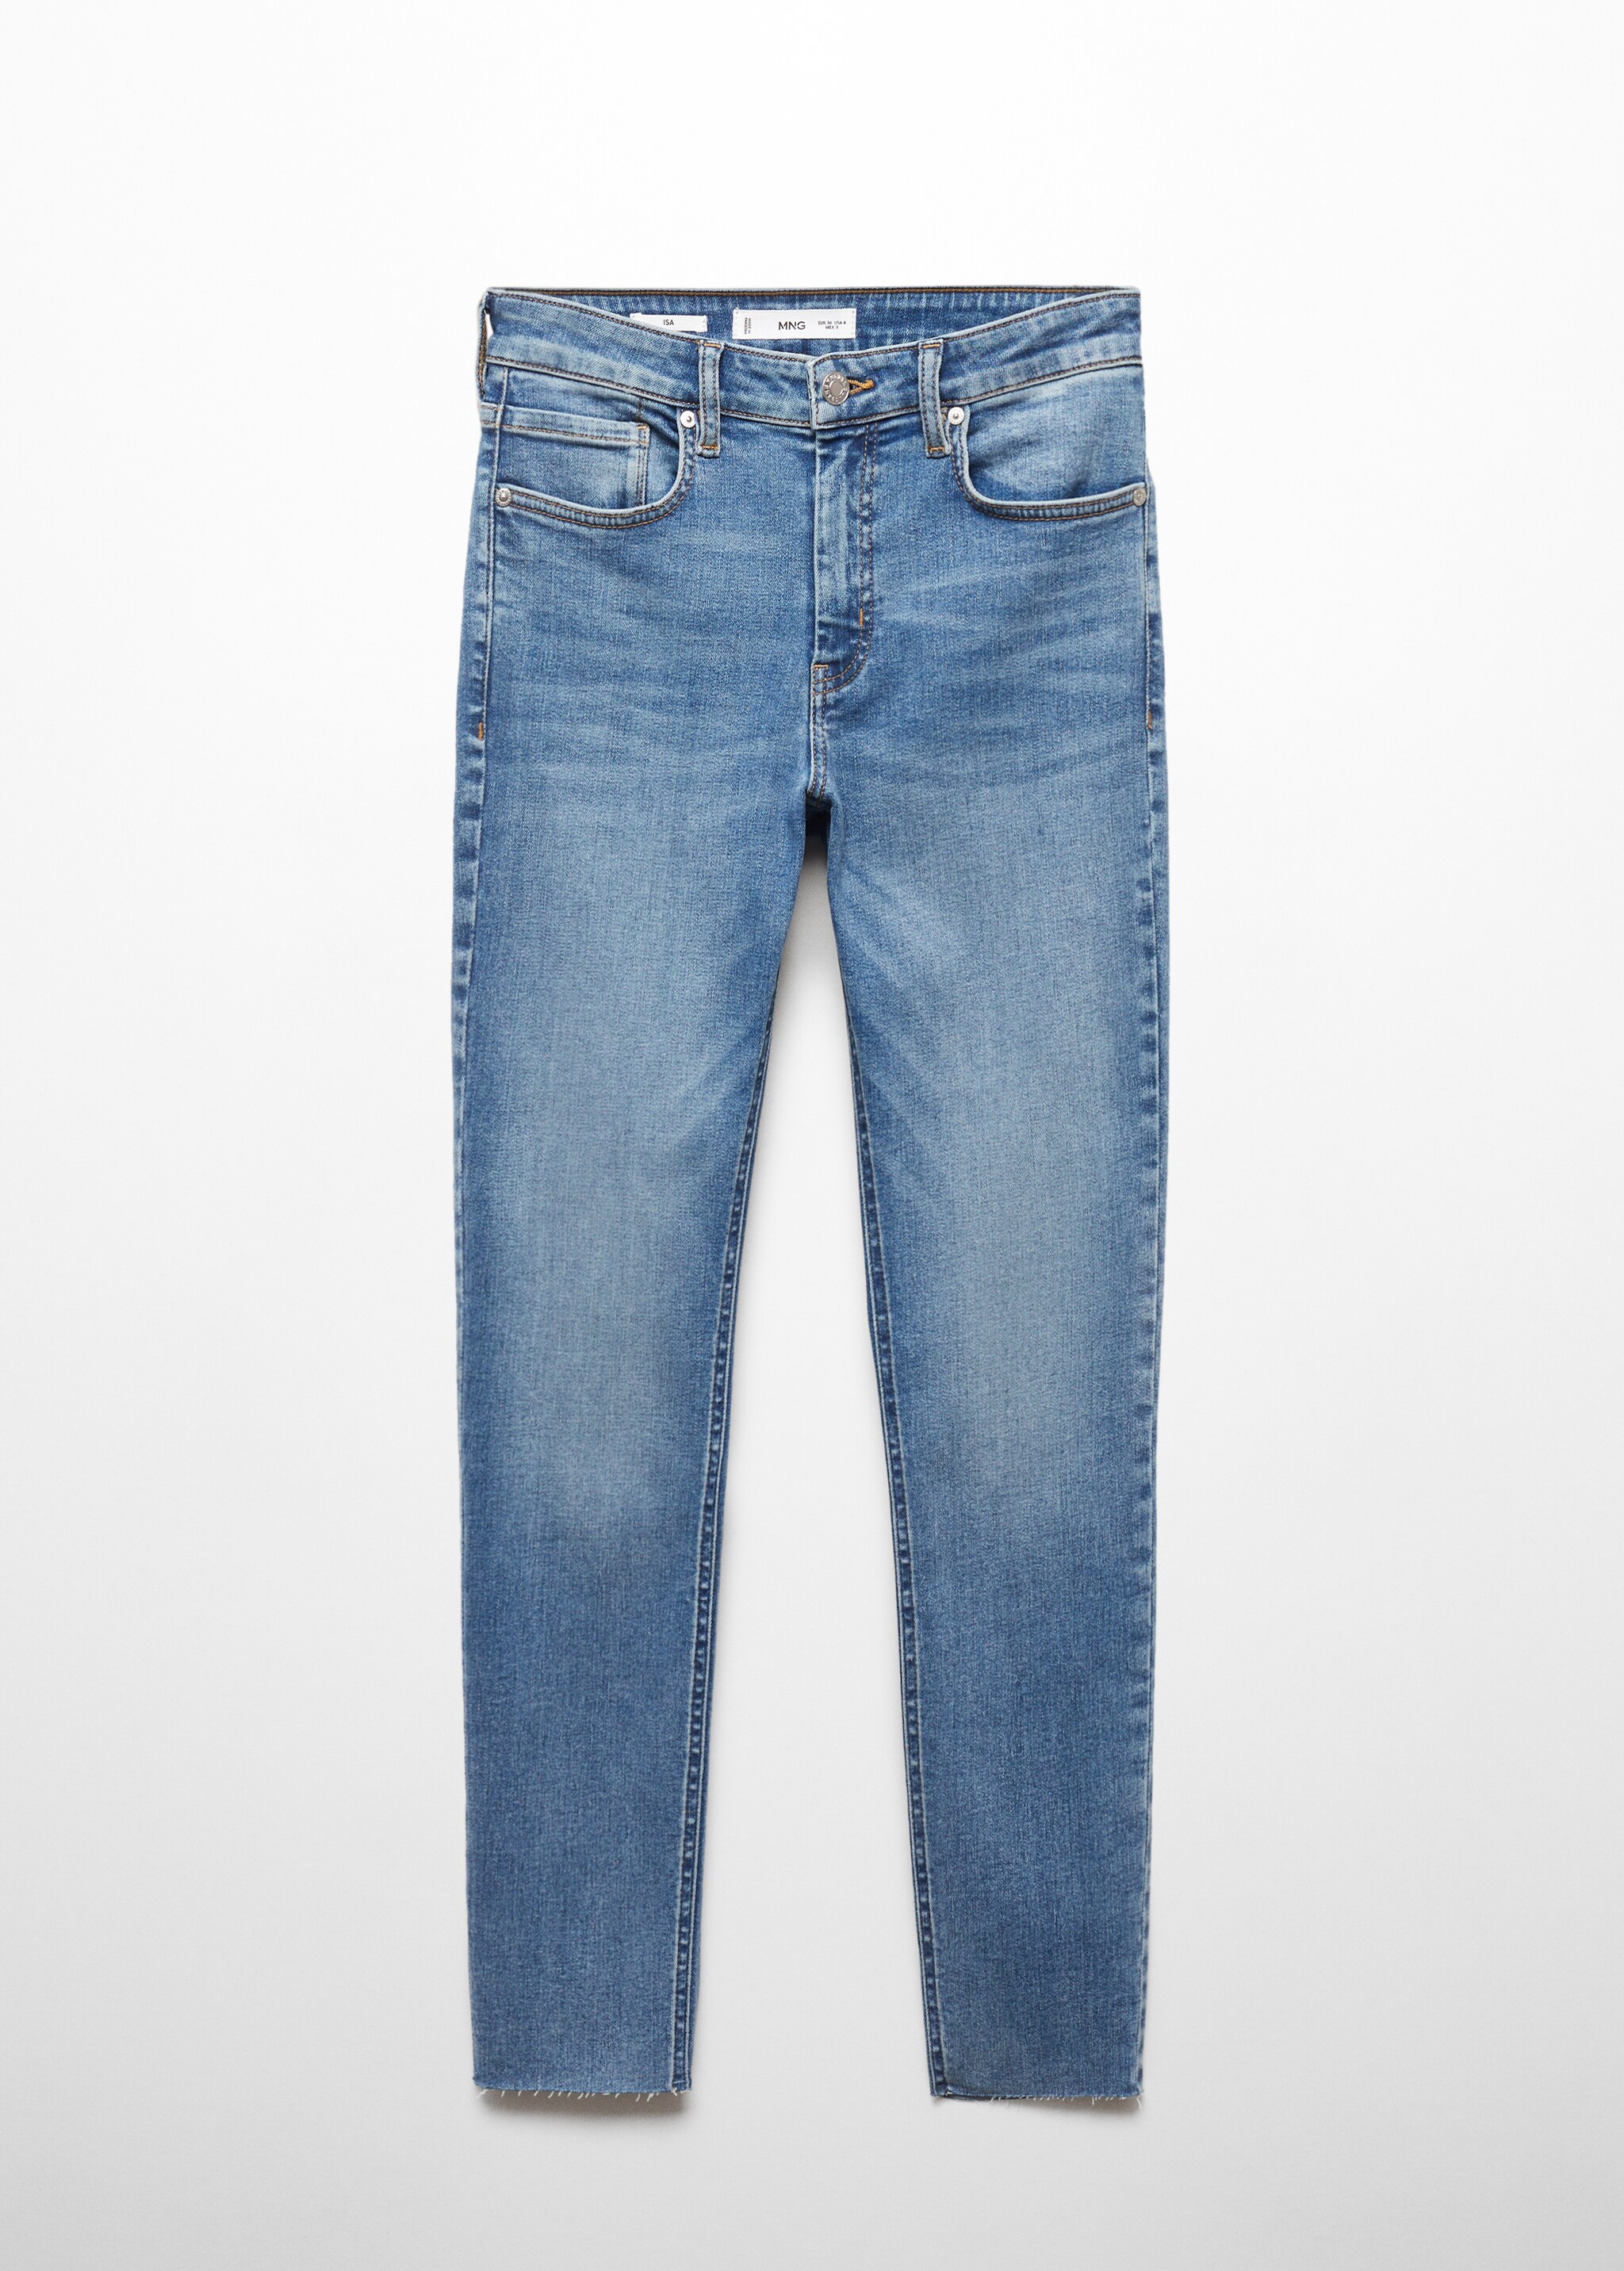 Укороченные джинсы-скинни - Изделие без модели